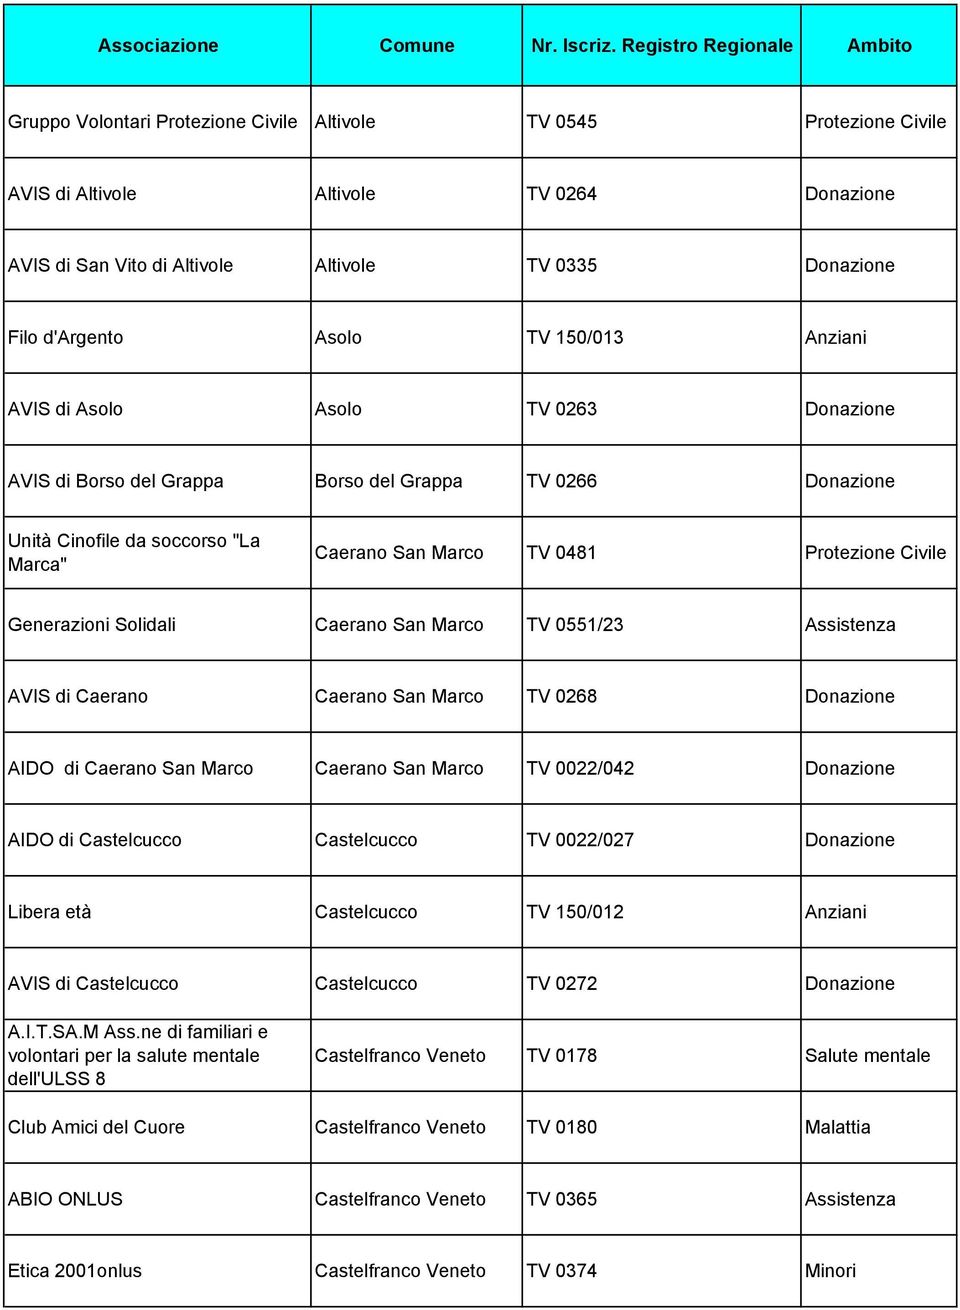 Generazioni Solidali Caerano San Marco TV 0551/23 Assistenza AVIS di Caerano Caerano San Marco TV 0268 Donazione AIDO di Caerano San Marco Caerano San Marco TV 0022/042 Donazione AIDO di Castelcucco